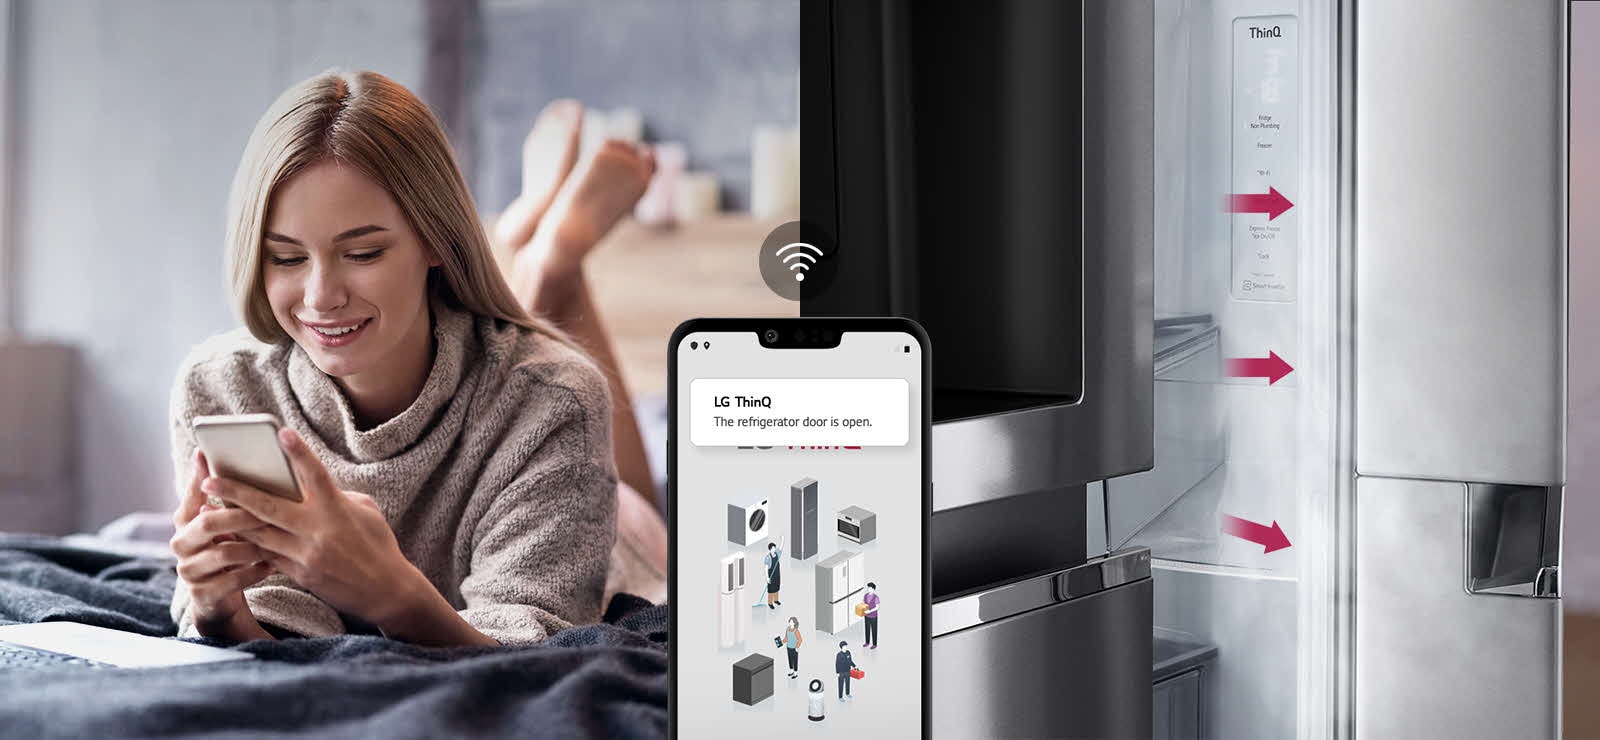 Μια γυναίκα περνάει την ώρα της στο κρεβάτι κοιτάζοντας την οθόνη του τηλεφώνου της, στη μία εικόνα. Στη δεύτερη εικόνα φαίνεται ότι η πόρτα του ψυγείου έχει παραμείνει ανοικτή. Στο προσκήνιο των δύο εικόνων φαίνεται η οθόνη του τηλεφώνου, στην οποία φαίνονται οι ειδοποιήσεις της εφαρμογής LG ThinQ και το εικονίδιο Wi-Fi πάνω από το τηλέφωνο.